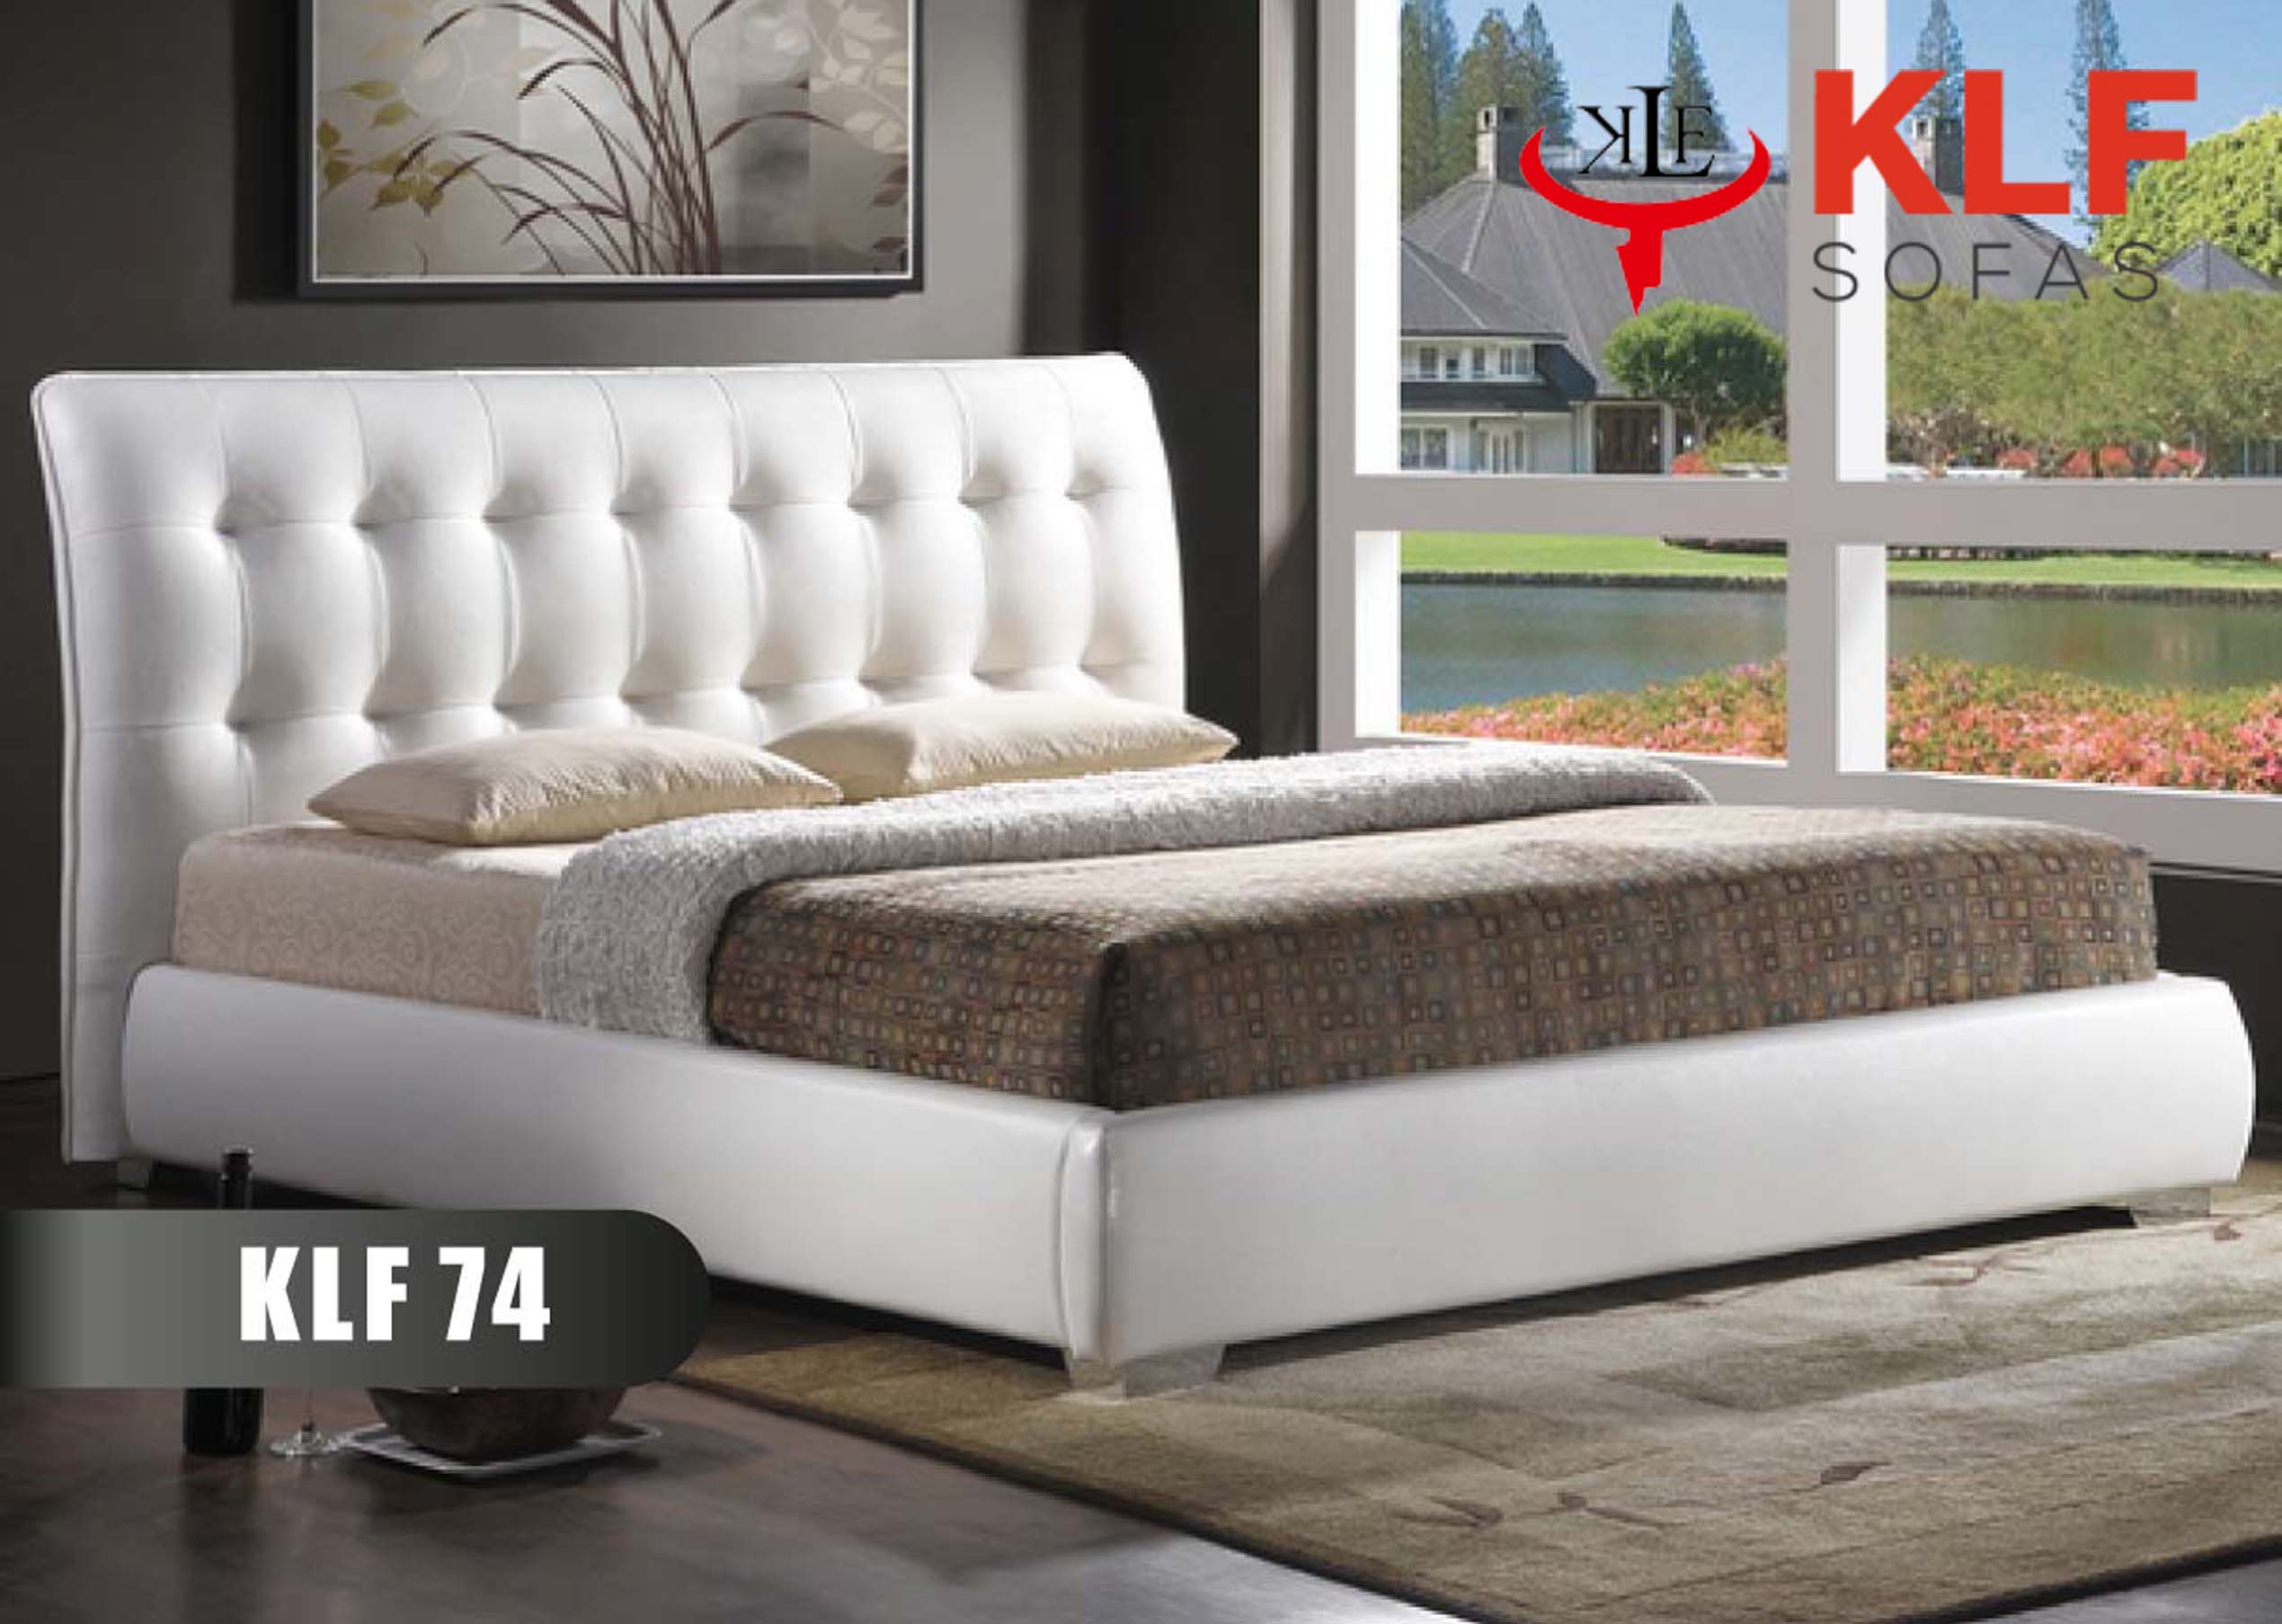 KLF Soft Beds